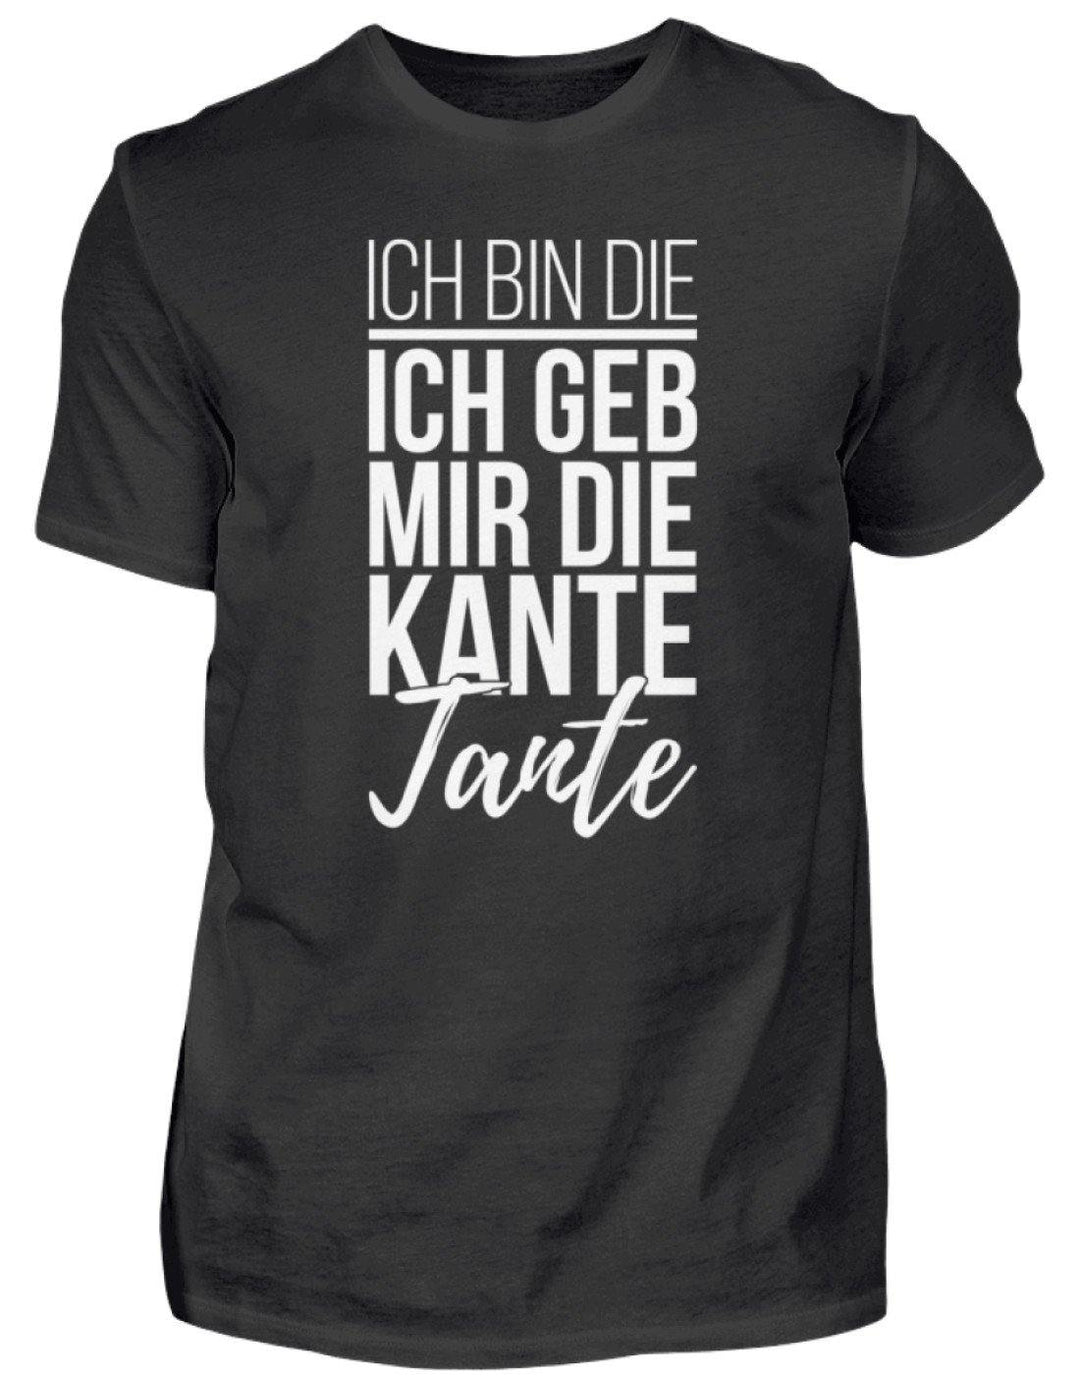 Kante Tante - Words on Shirts  - Herren Shirt - Words on Shirts Sag es mit dem Mittelfinger Shirts Hoodies Sweatshirt Taschen Gymsack Spruch Sprüche Statement